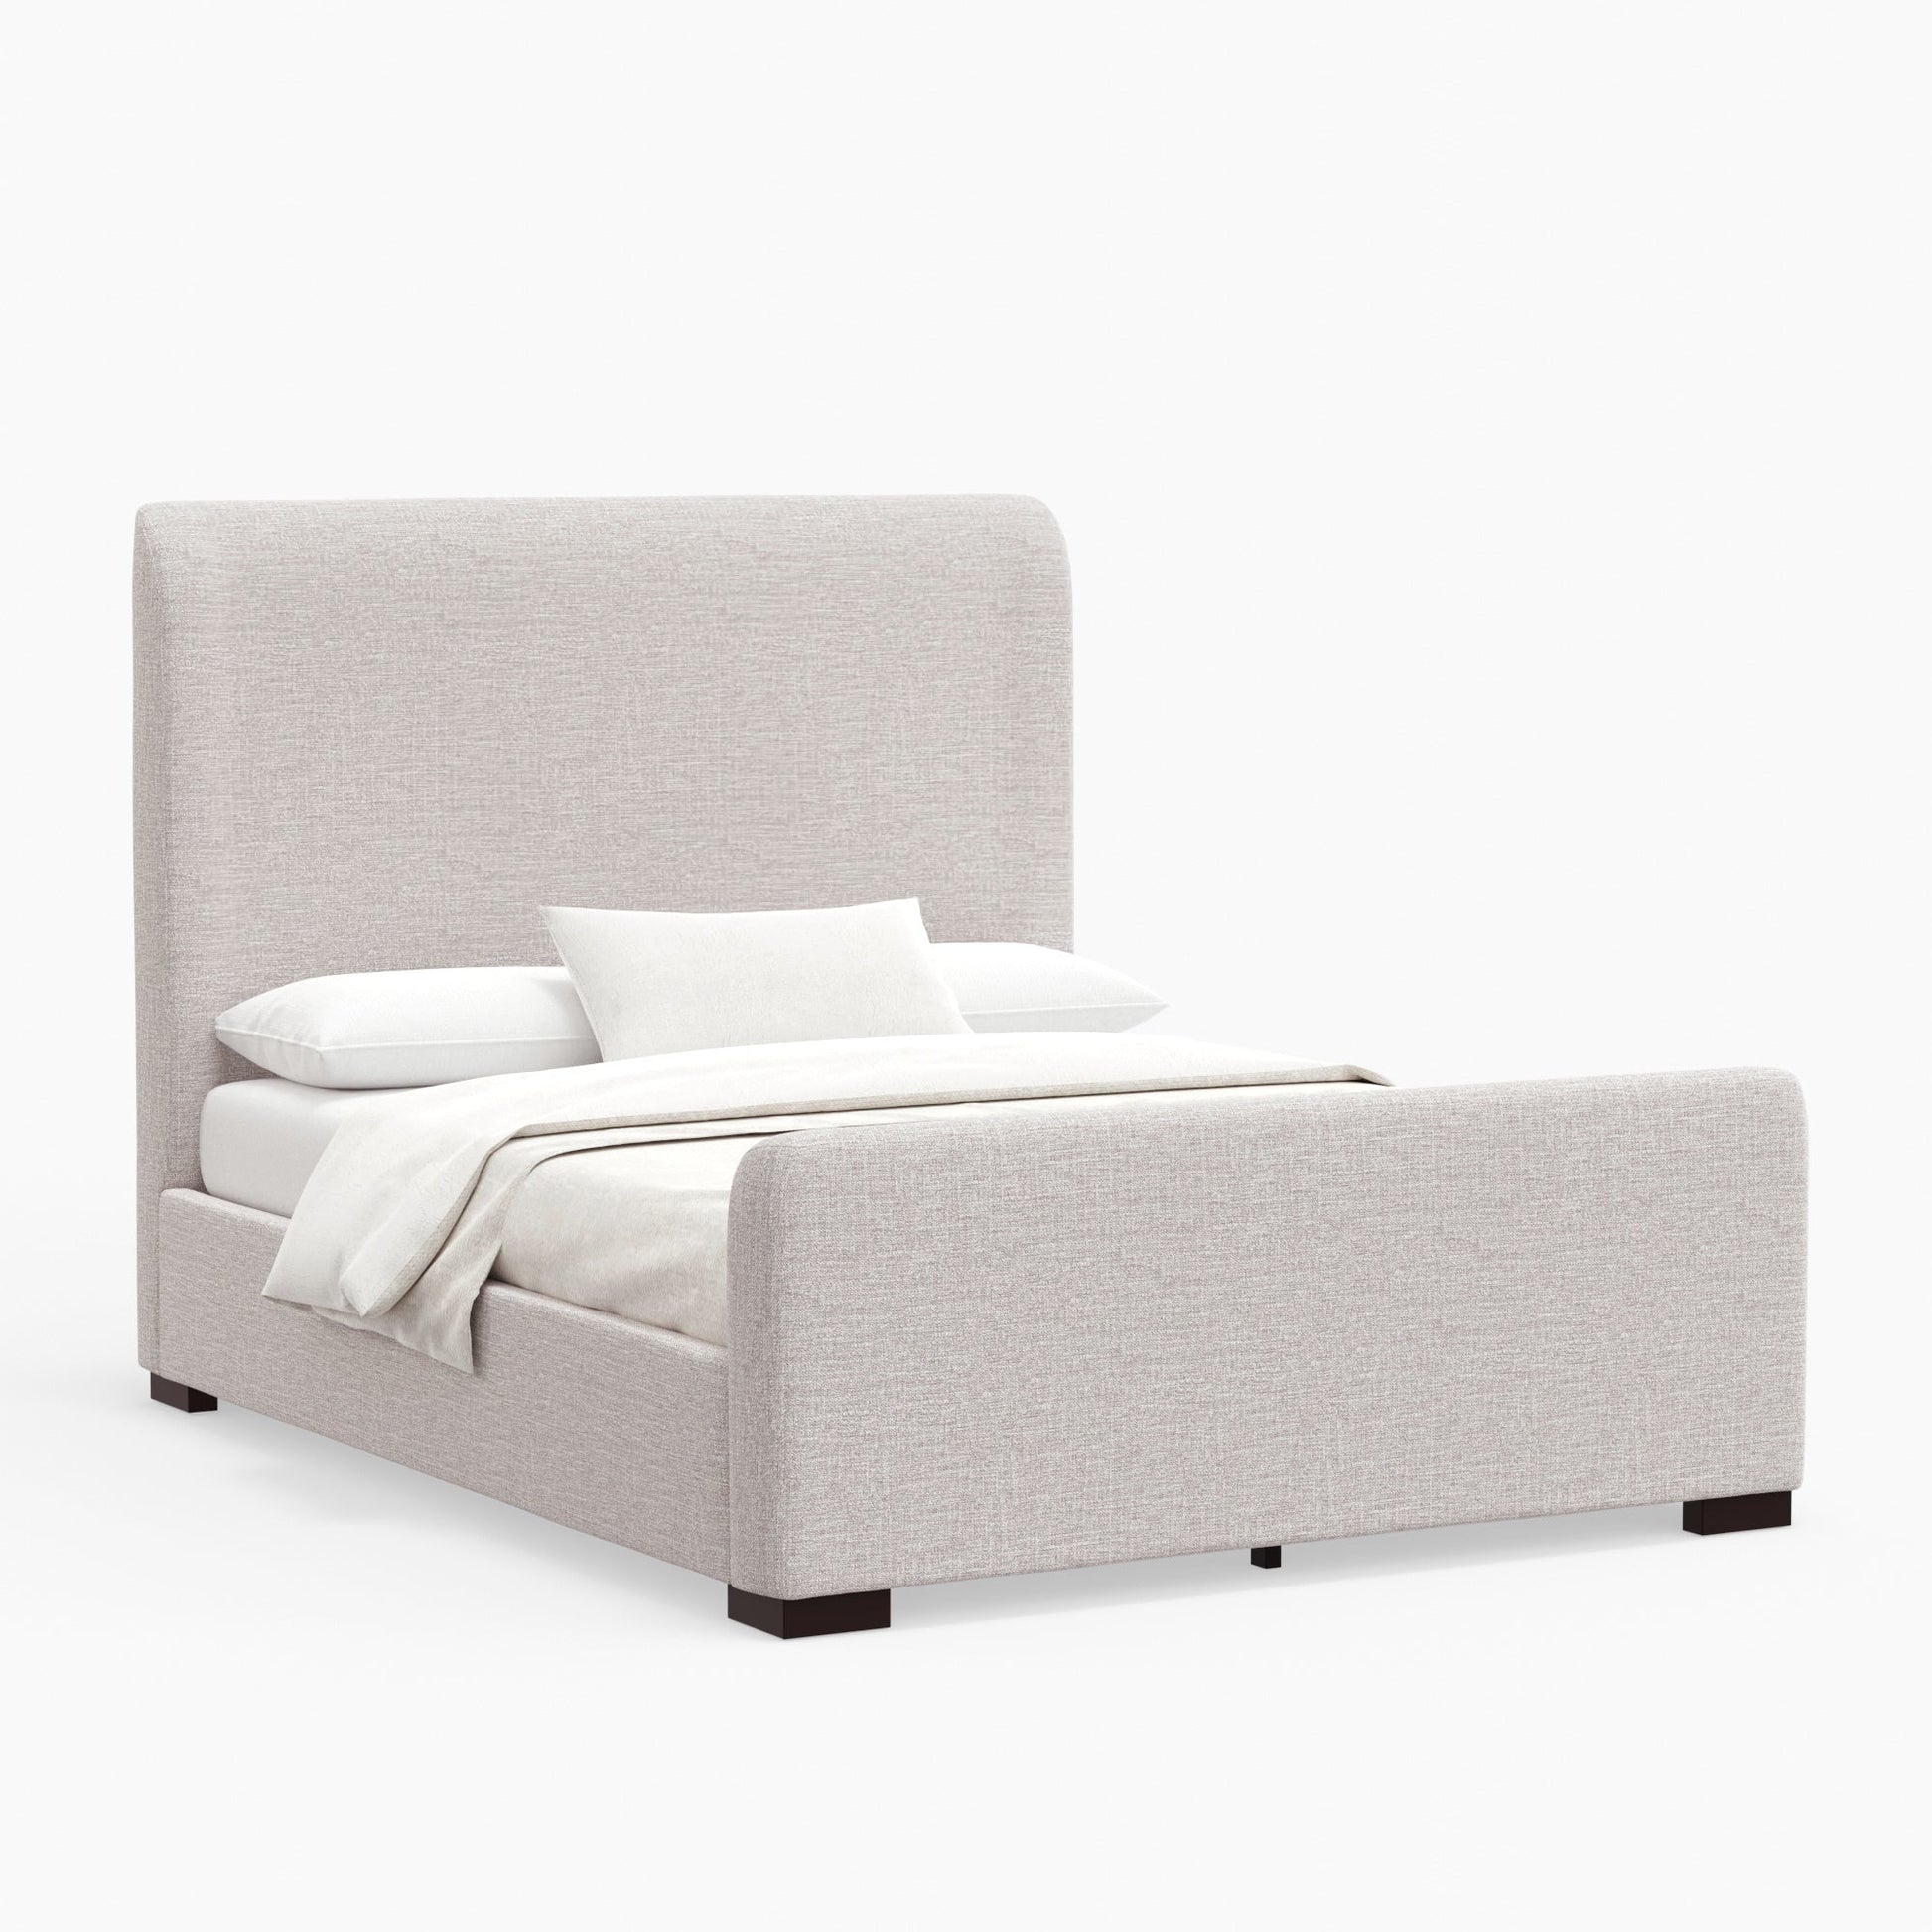 Adele Platform Bed - Alpine Furniture